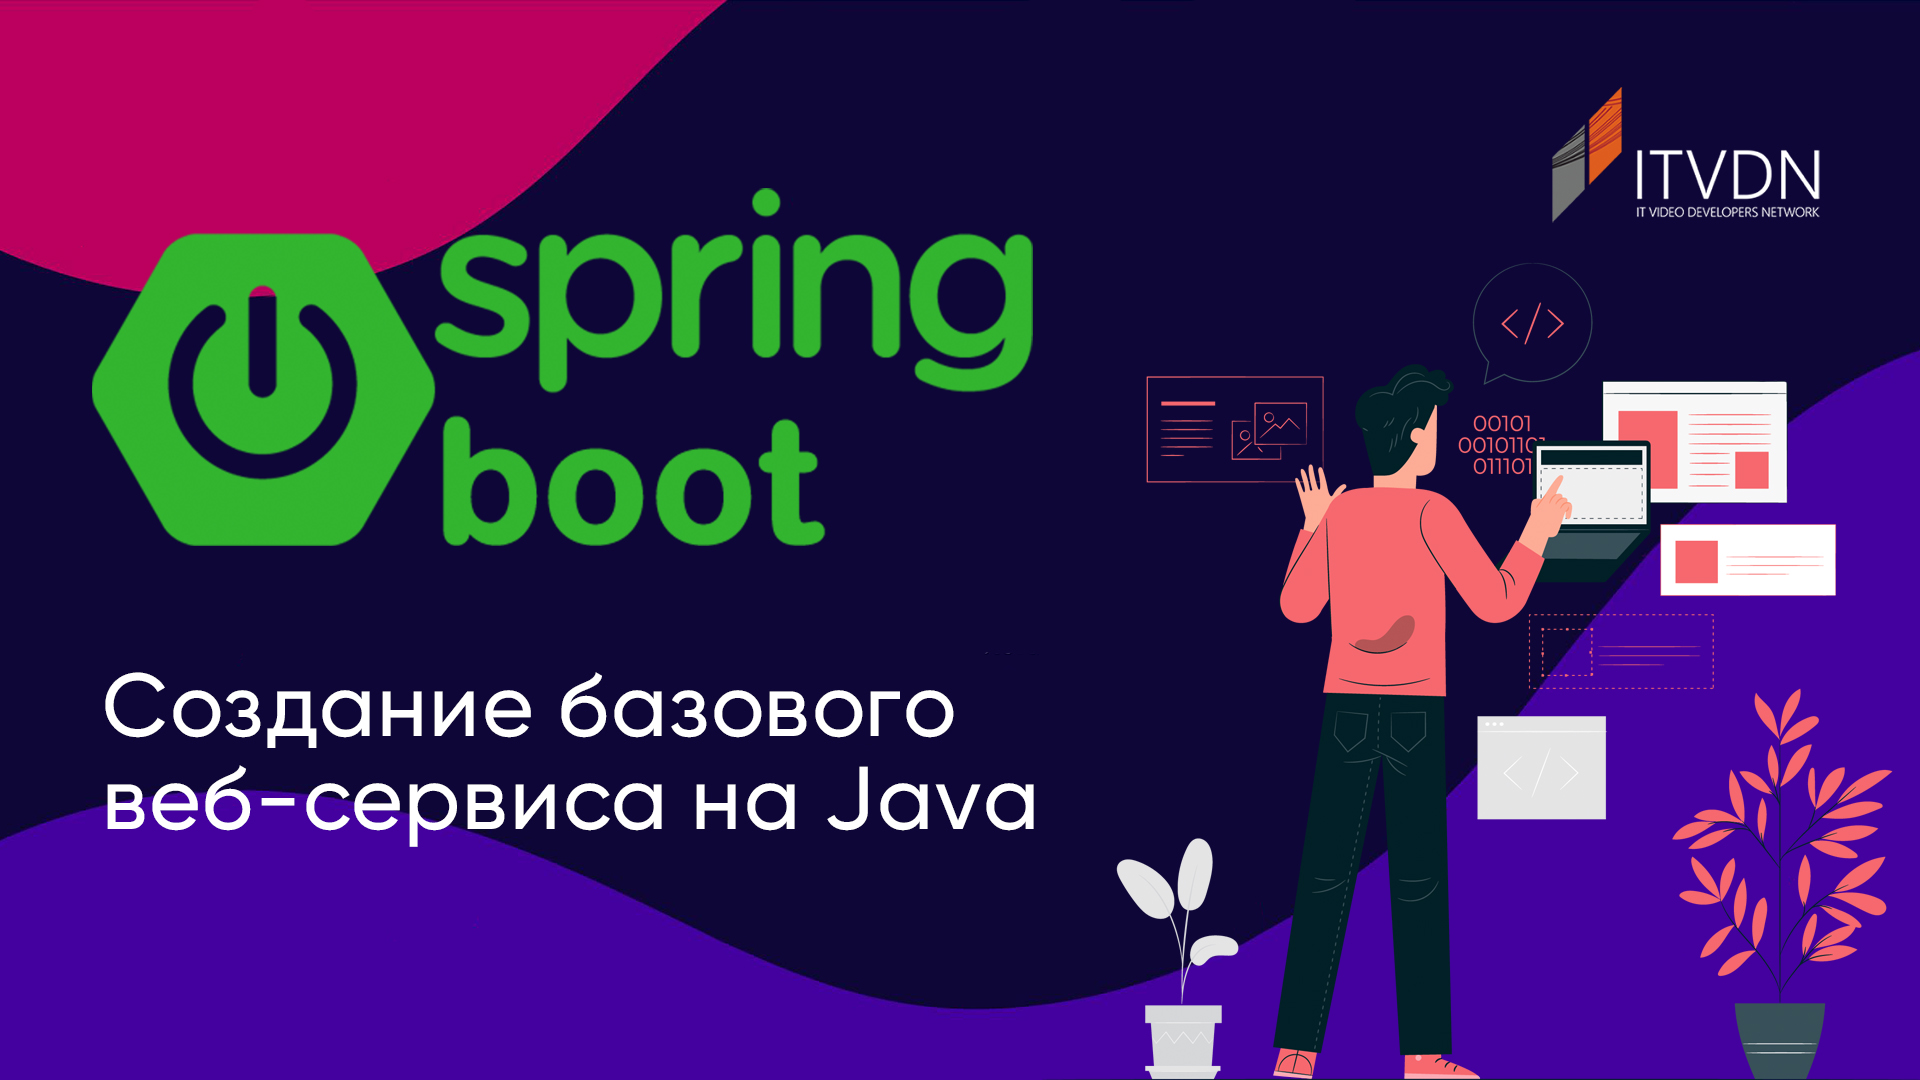 Створення базового Spring boot веб-сервісу на Java.